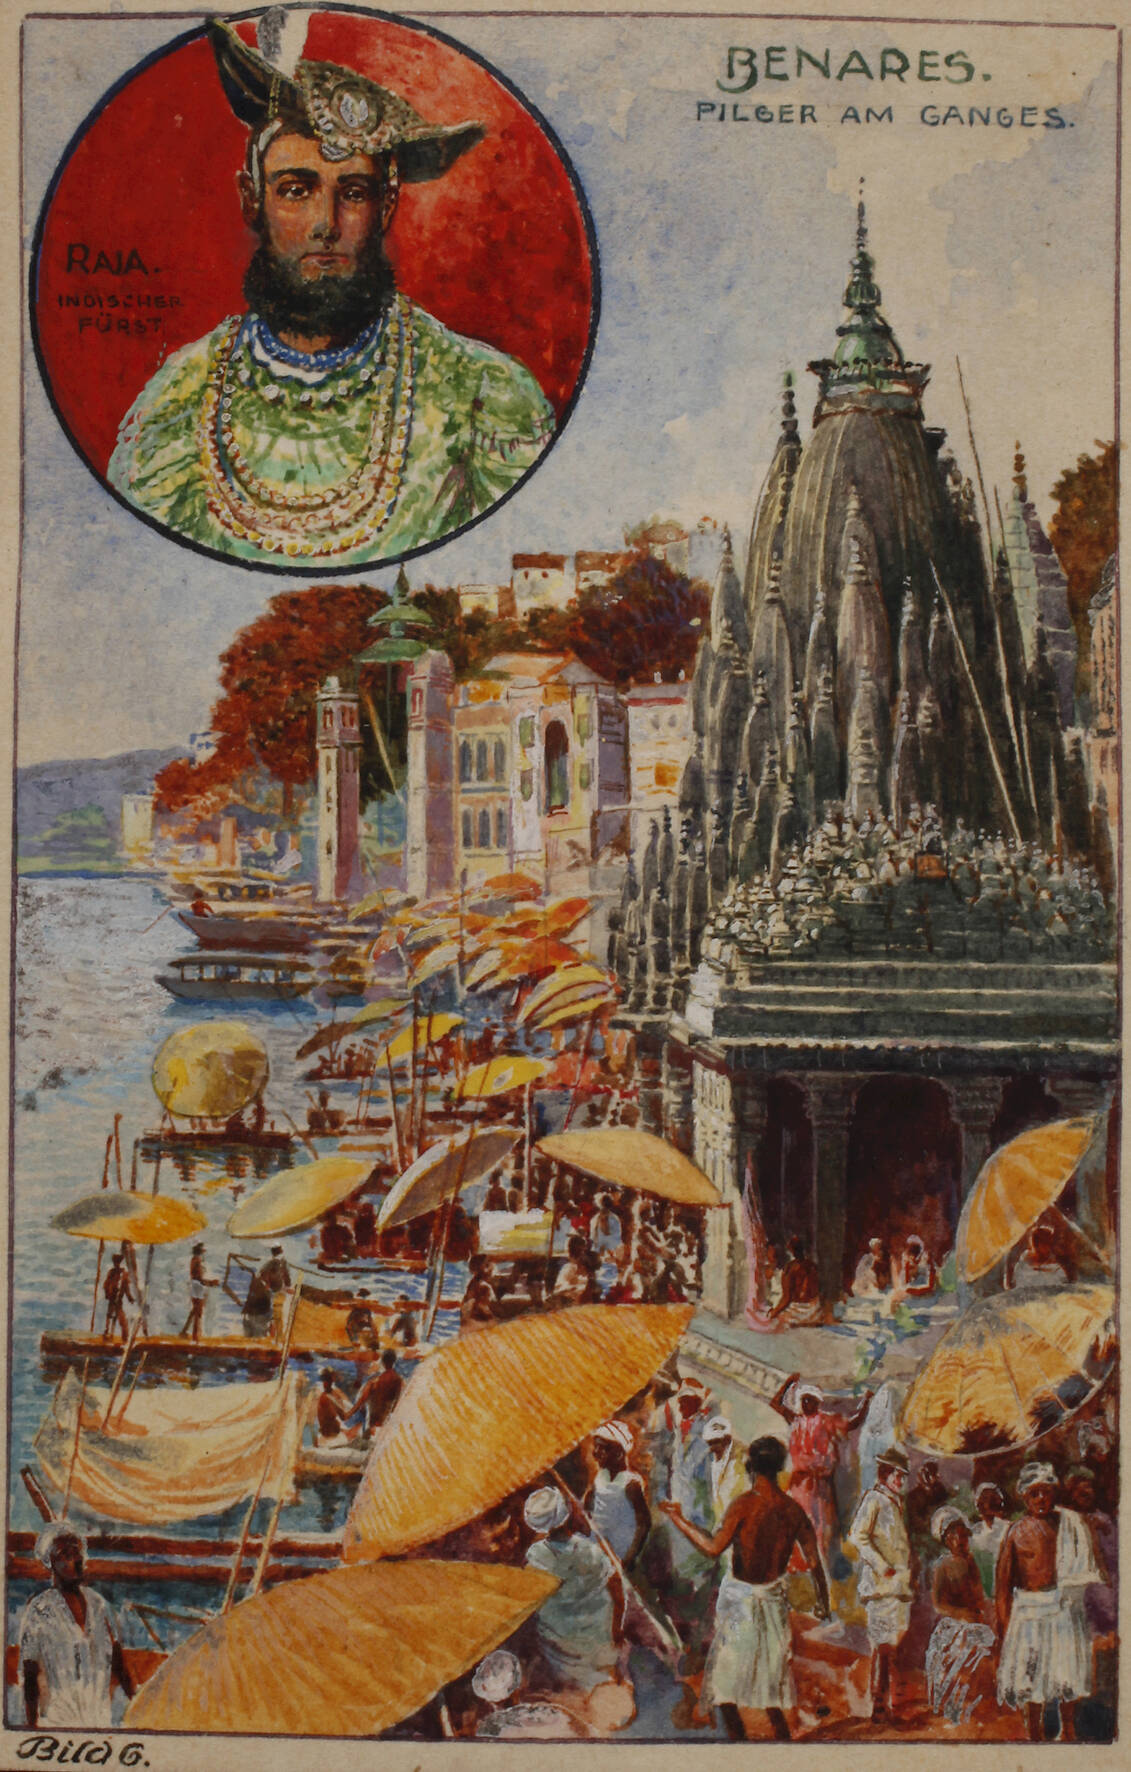 "Benares - Pilger am Ganges"